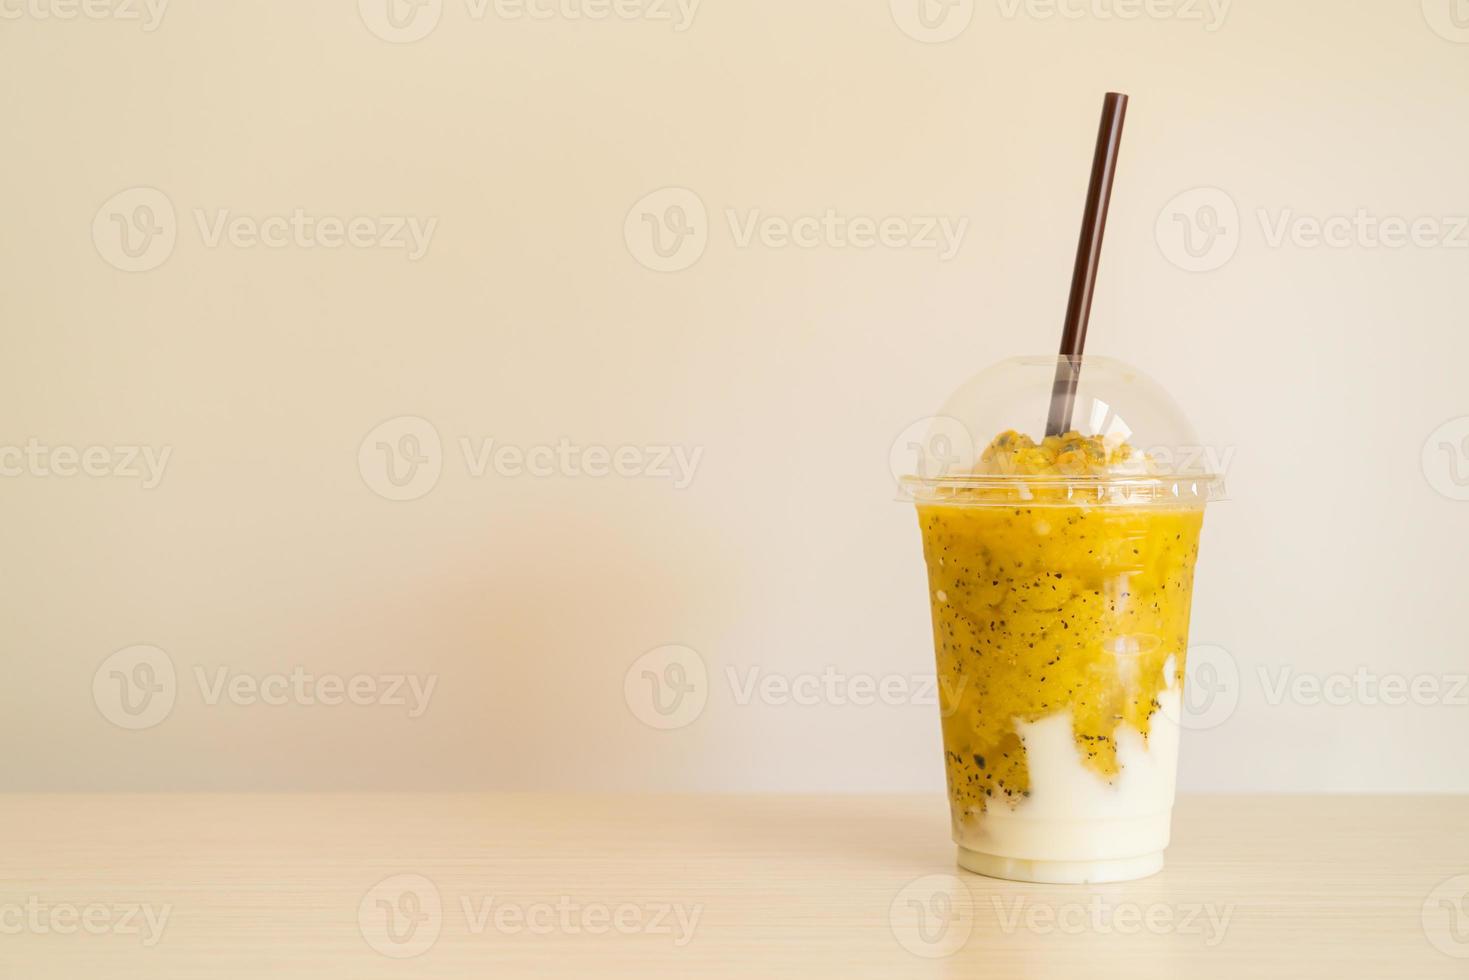 färska passionfruktsmoothies med yoghurt i glas foto